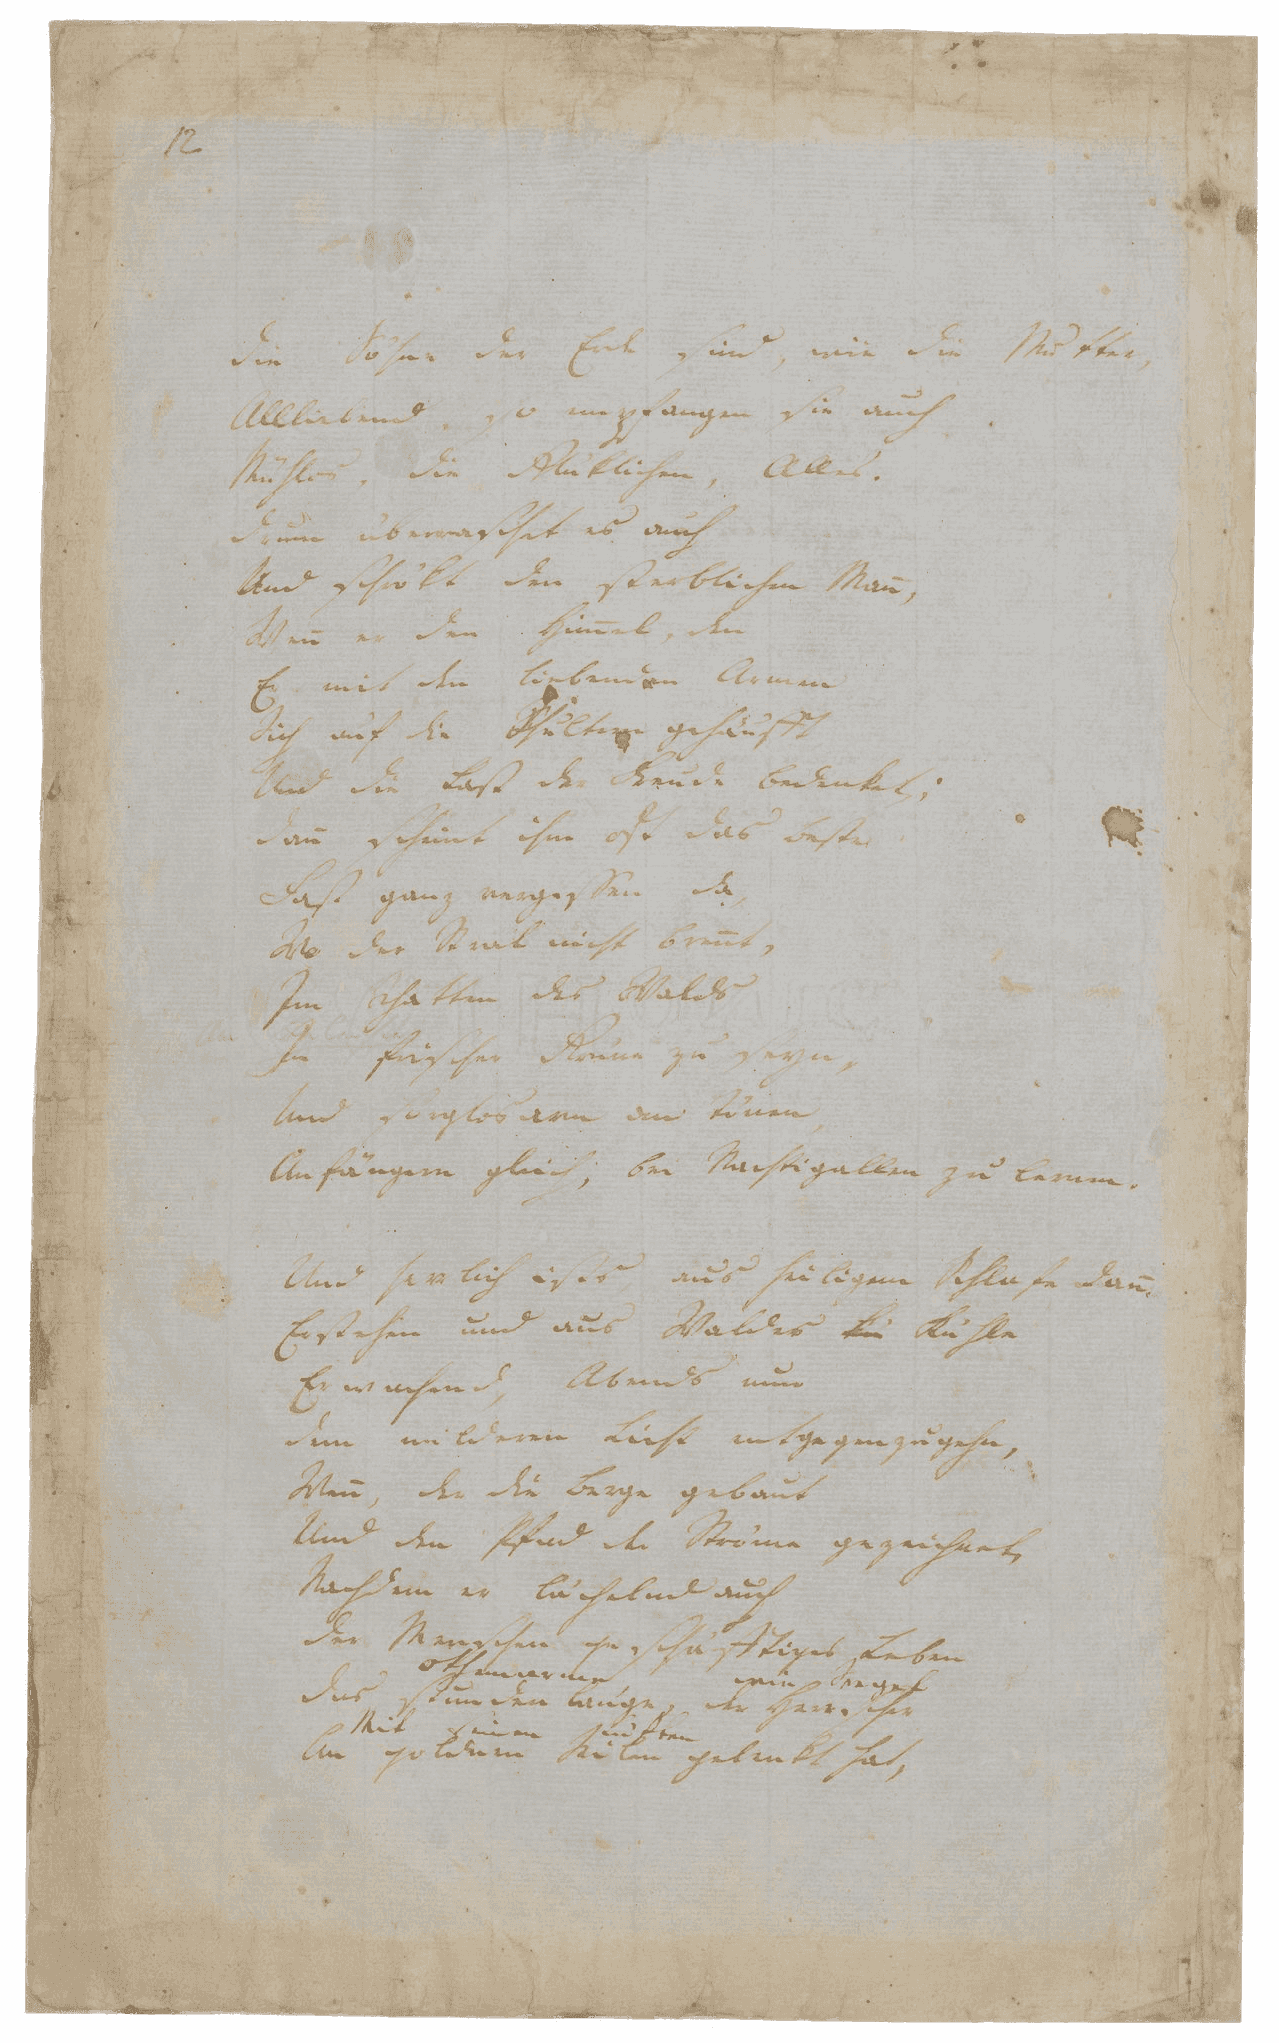 Das Manuskript zeigt zwei lange Strophen der Rhein-Hymne in Hölderlins zarter Handschrift